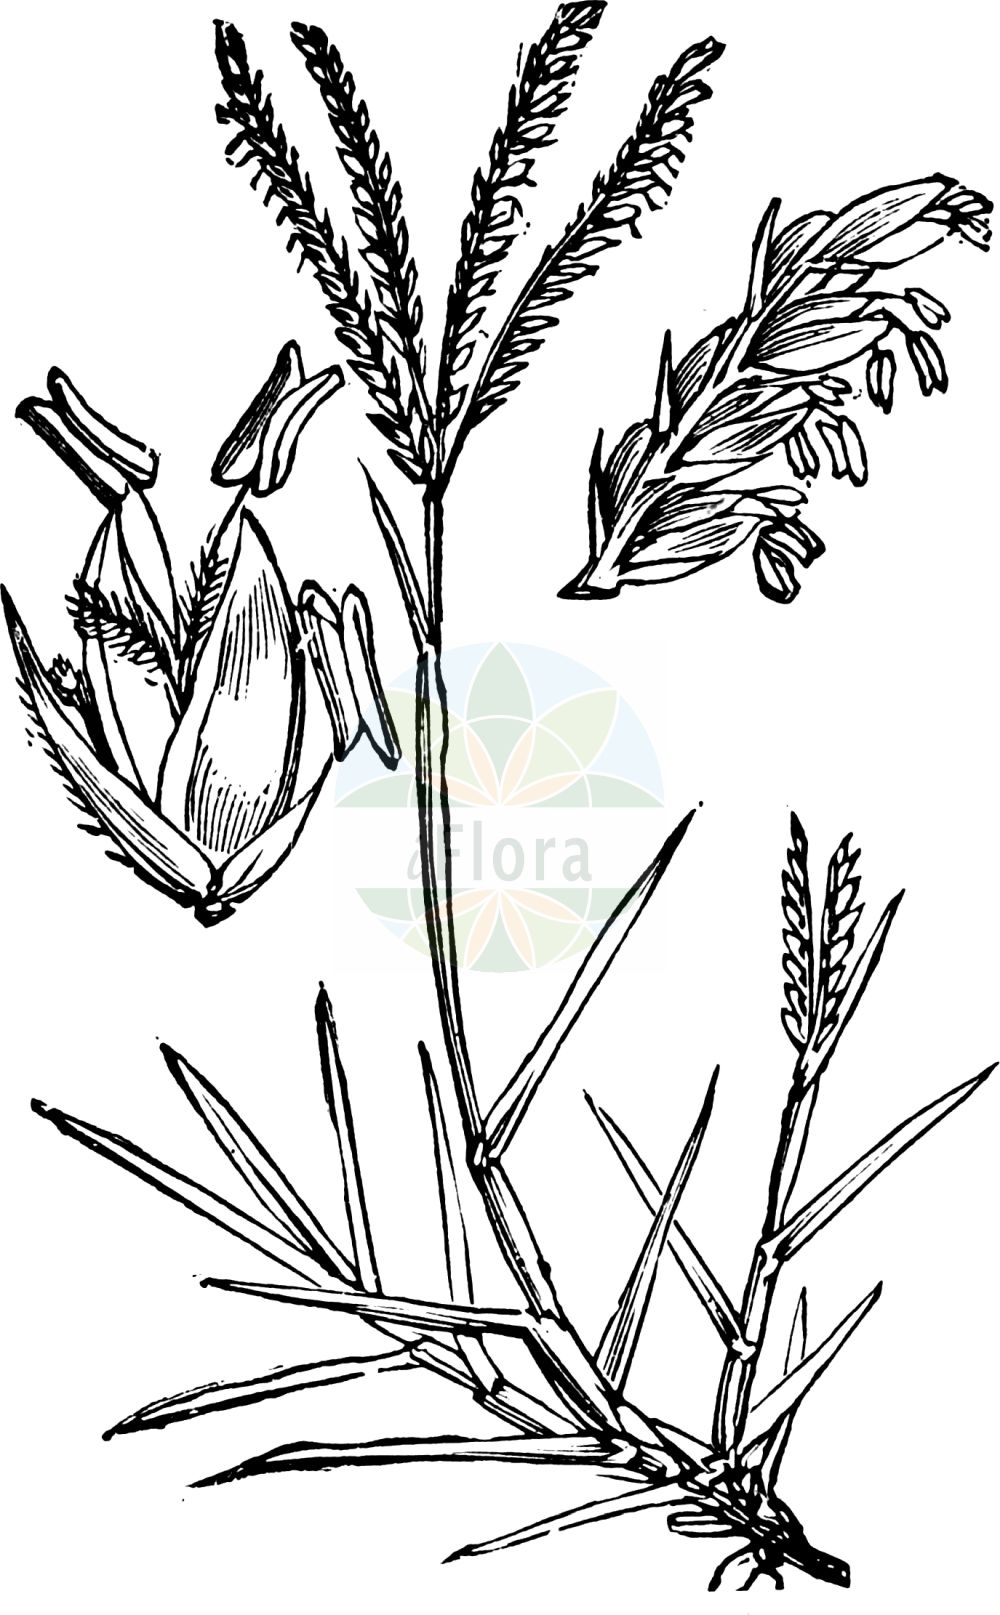 Historische Abbildung von Cynodon dactylon (Hundszahngras - African Bermuda-grass). Das Bild zeigt Blatt, Bluete, Frucht und Same. ---- Historical Drawing of Cynodon dactylon (Hundszahngras - African Bermuda-grass). The image is showing leaf, flower, fruit and seed.(Cynodon dactylon,Hundszahngras,African Bermuda-grass,Cynodon dactylon,Cynodon glabratus,Dactylon officinale,Panicum dactylon,Hundszahngras,Bermudagras,Fingerfoermiges Hundszahngras,Gewoehnliches Hundszahngras,African Bermuda-grass,Bermuda-grass,Bahama Grass,Couch Grass,Devil's Grass,Dog's-tooth Grass,Dubo,Indian Doab,Scutch Grass,Cynodon,Hundszahngras,Bermudagrass,Poaceae,Süßgräser,Grass family,Blatt,Bluete,Frucht,Same,leaf,flower,fruit,seed,Fitch et al. (1880))